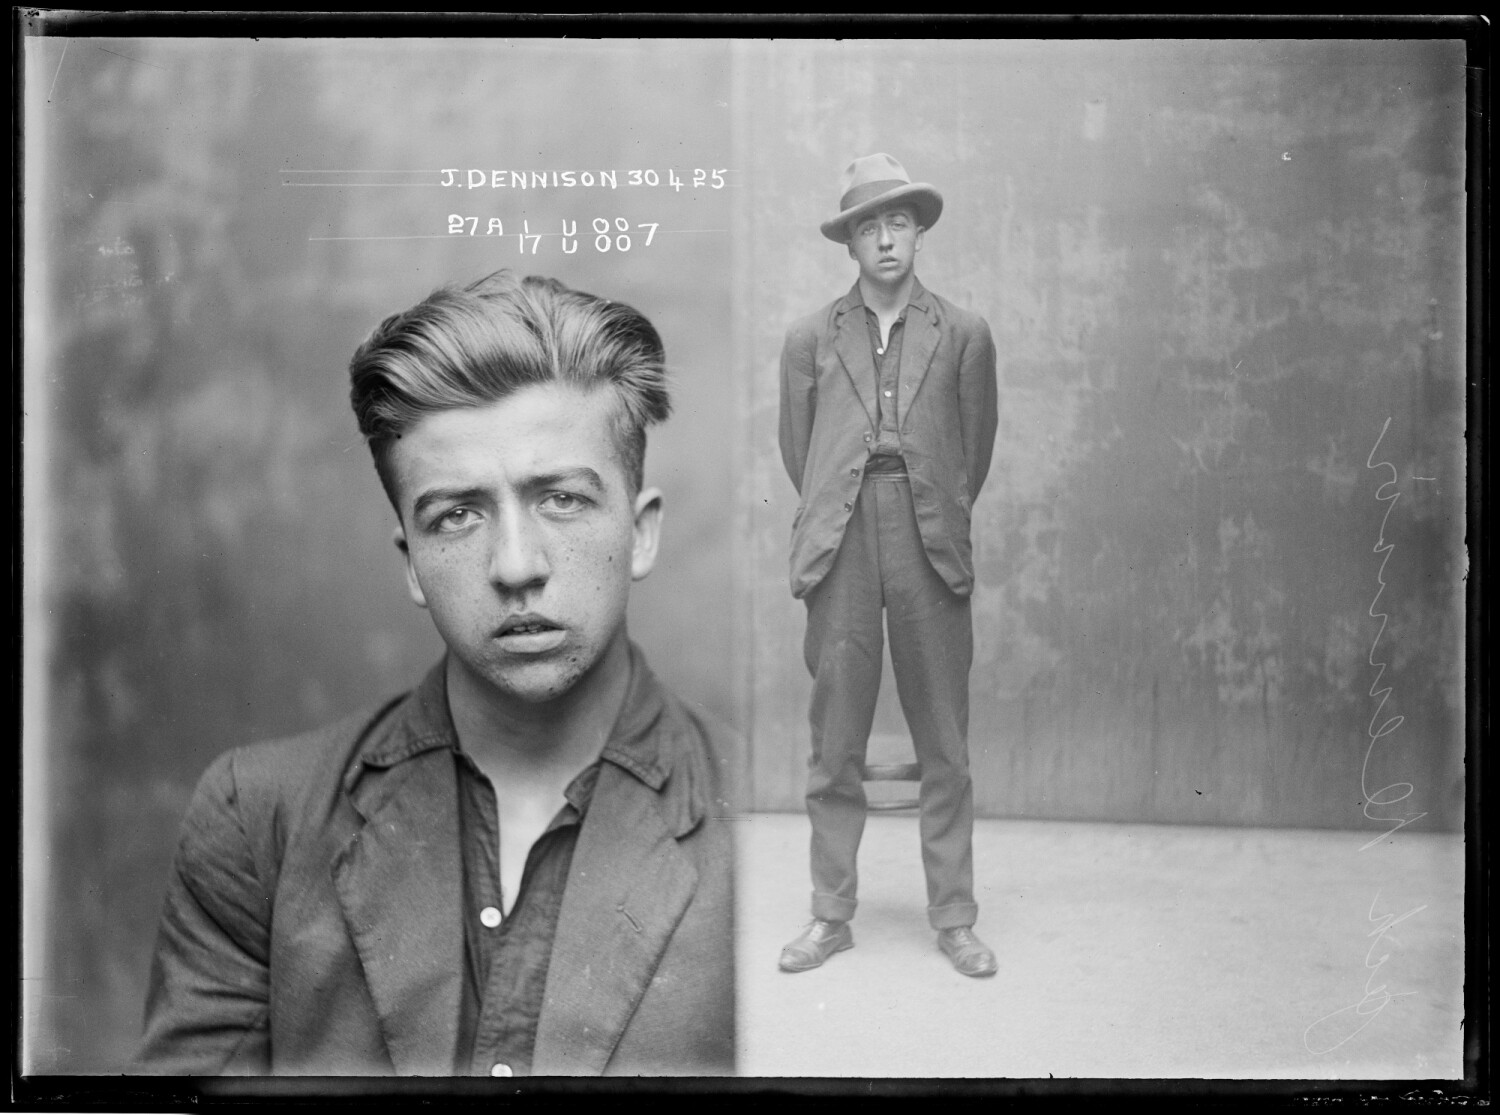 Джек Деннисон, вор, совершил серию ограблений со взломами, во время который оставлял насмешливые записки с подписью Апач, 1925 год. Архив судебной фотографии полиции Нового Южного Уэльса